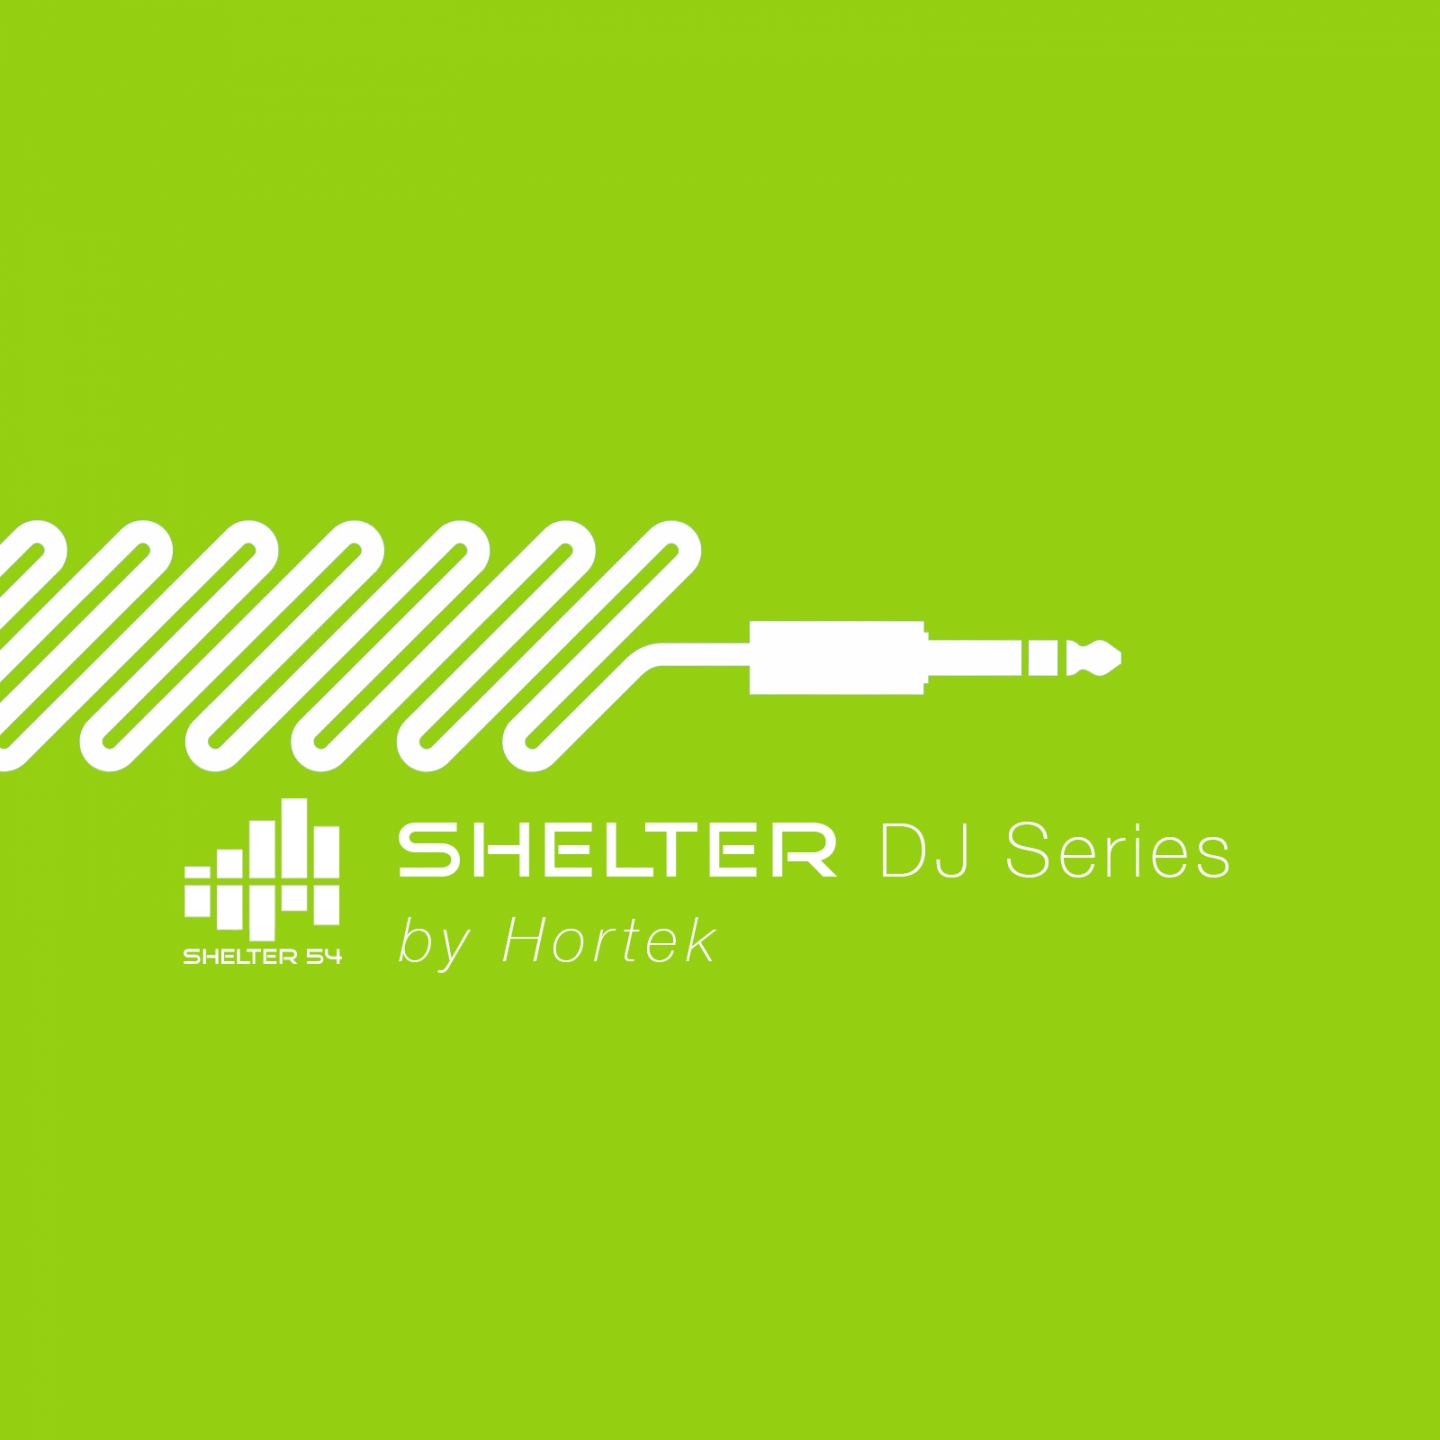 Shelter54 DJ Series by Hortek